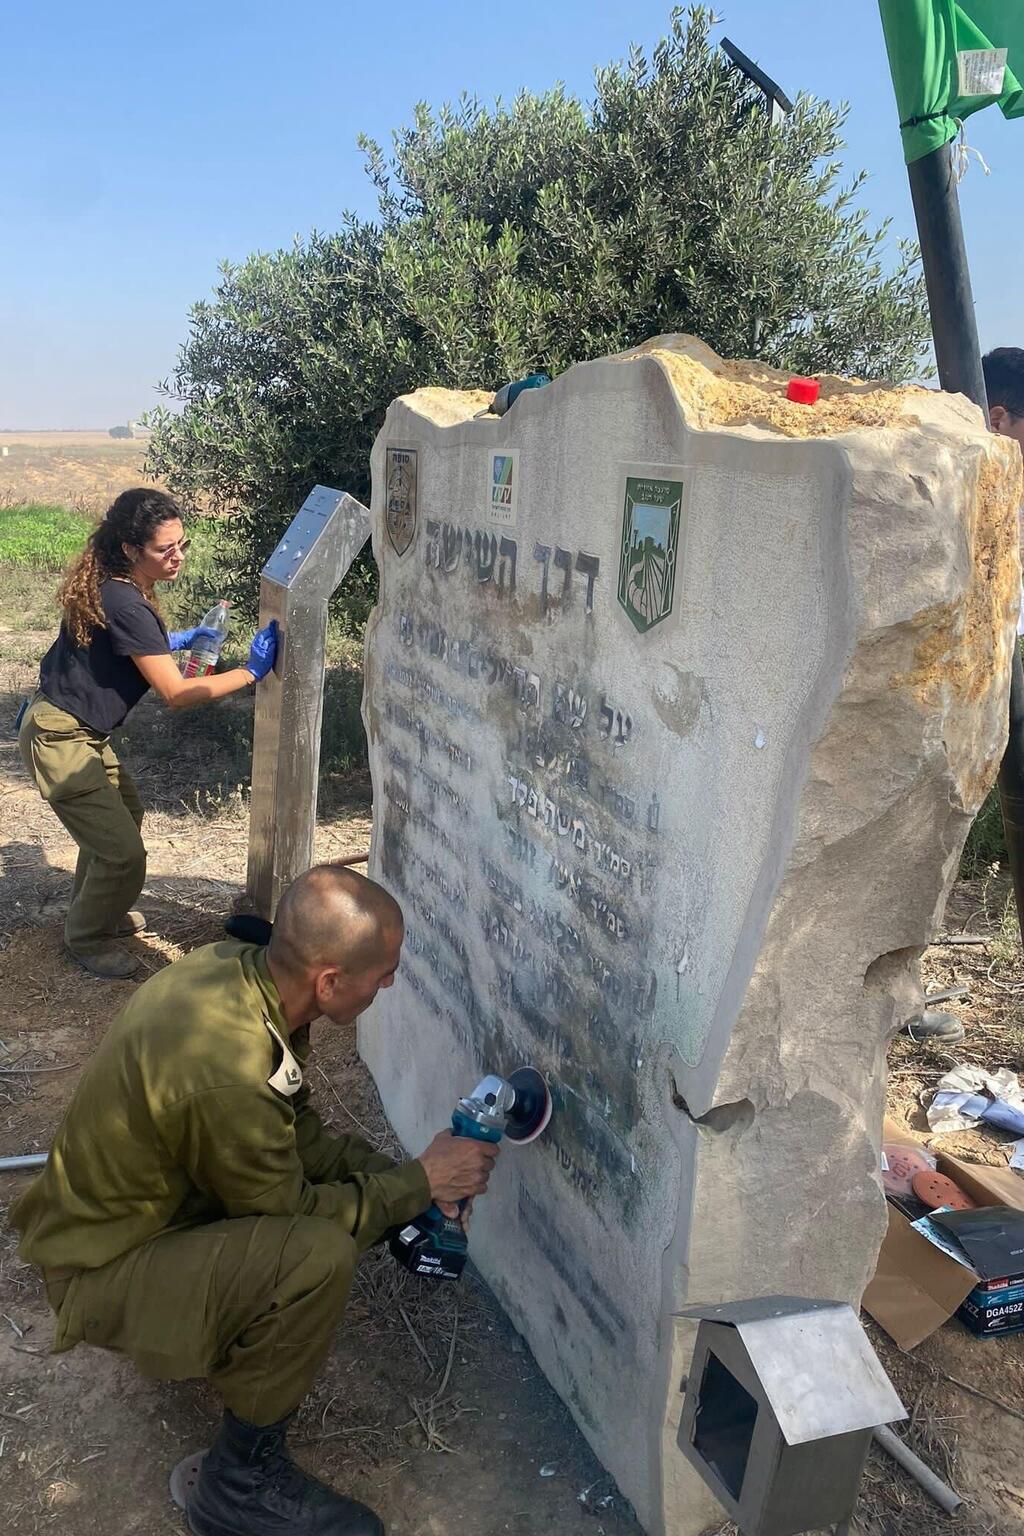 האנדרטה של לוחמי גדוד 53 שהושחתה בשבת השחורה על ידי מחלבי חמאס שוקמה מחדש על ידי לוחמים מאותו הגדוד